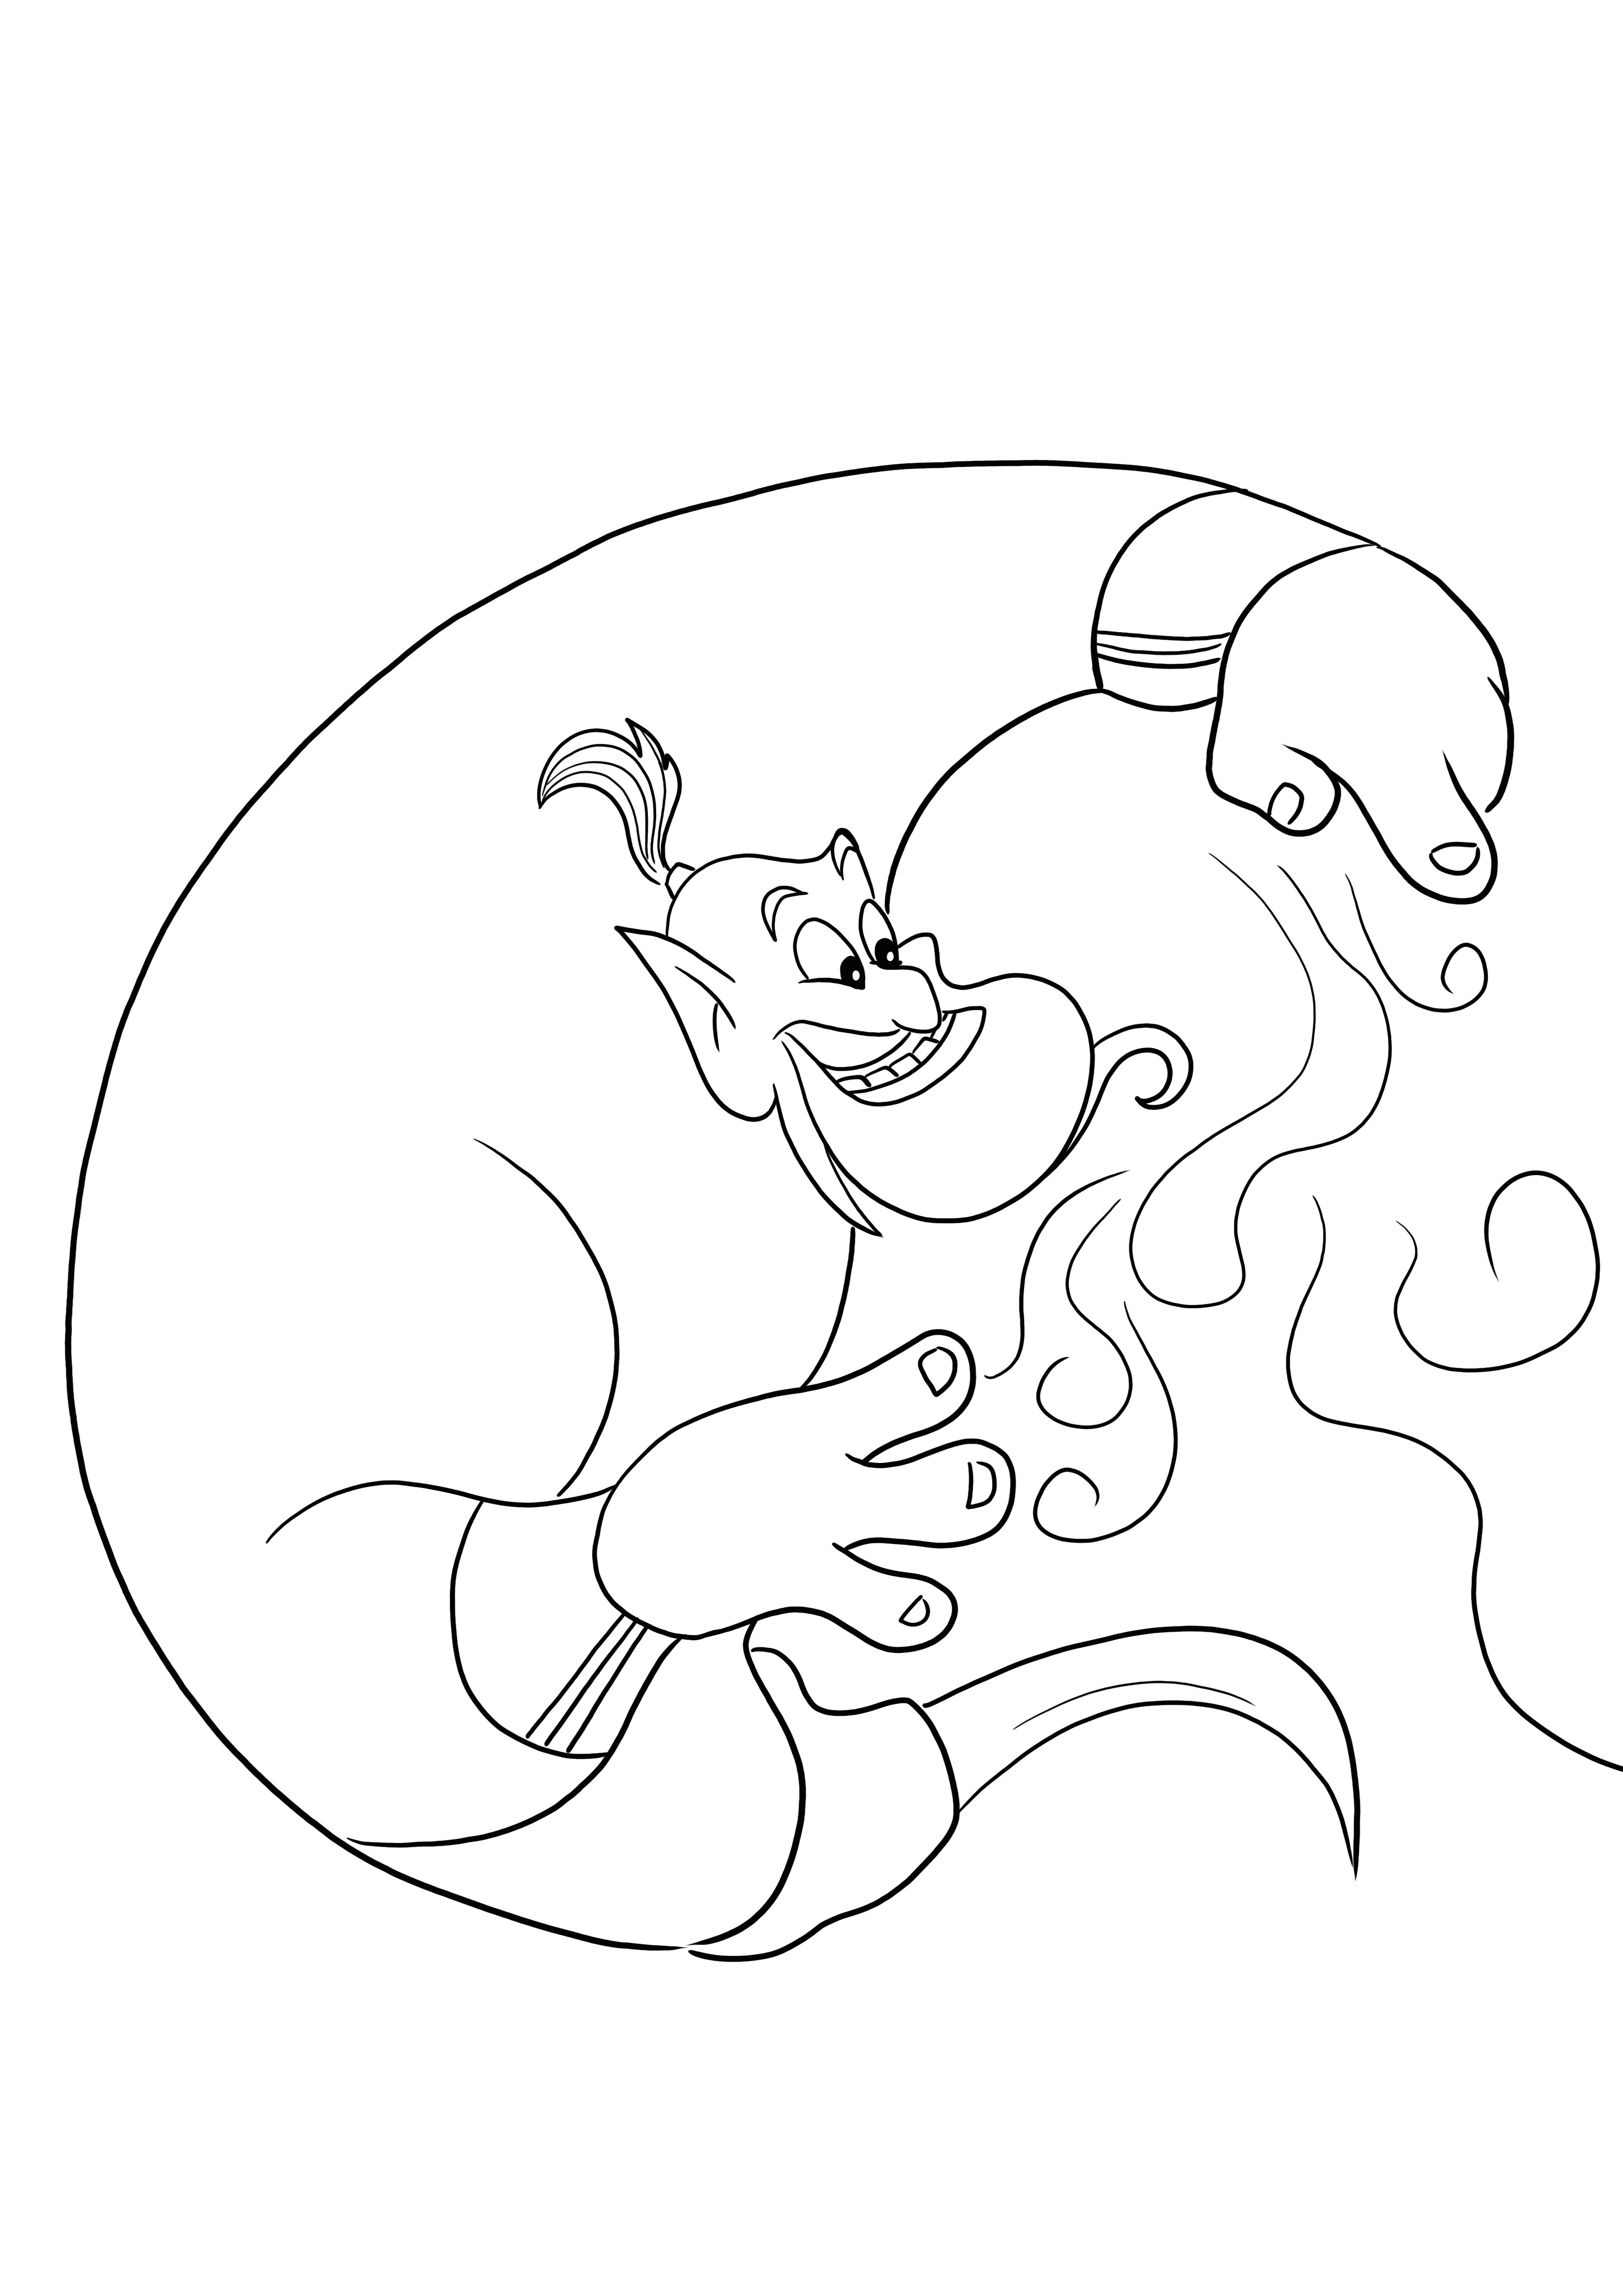 Image gratuite à imprimer et à colorier de Jennie du film Aladdin